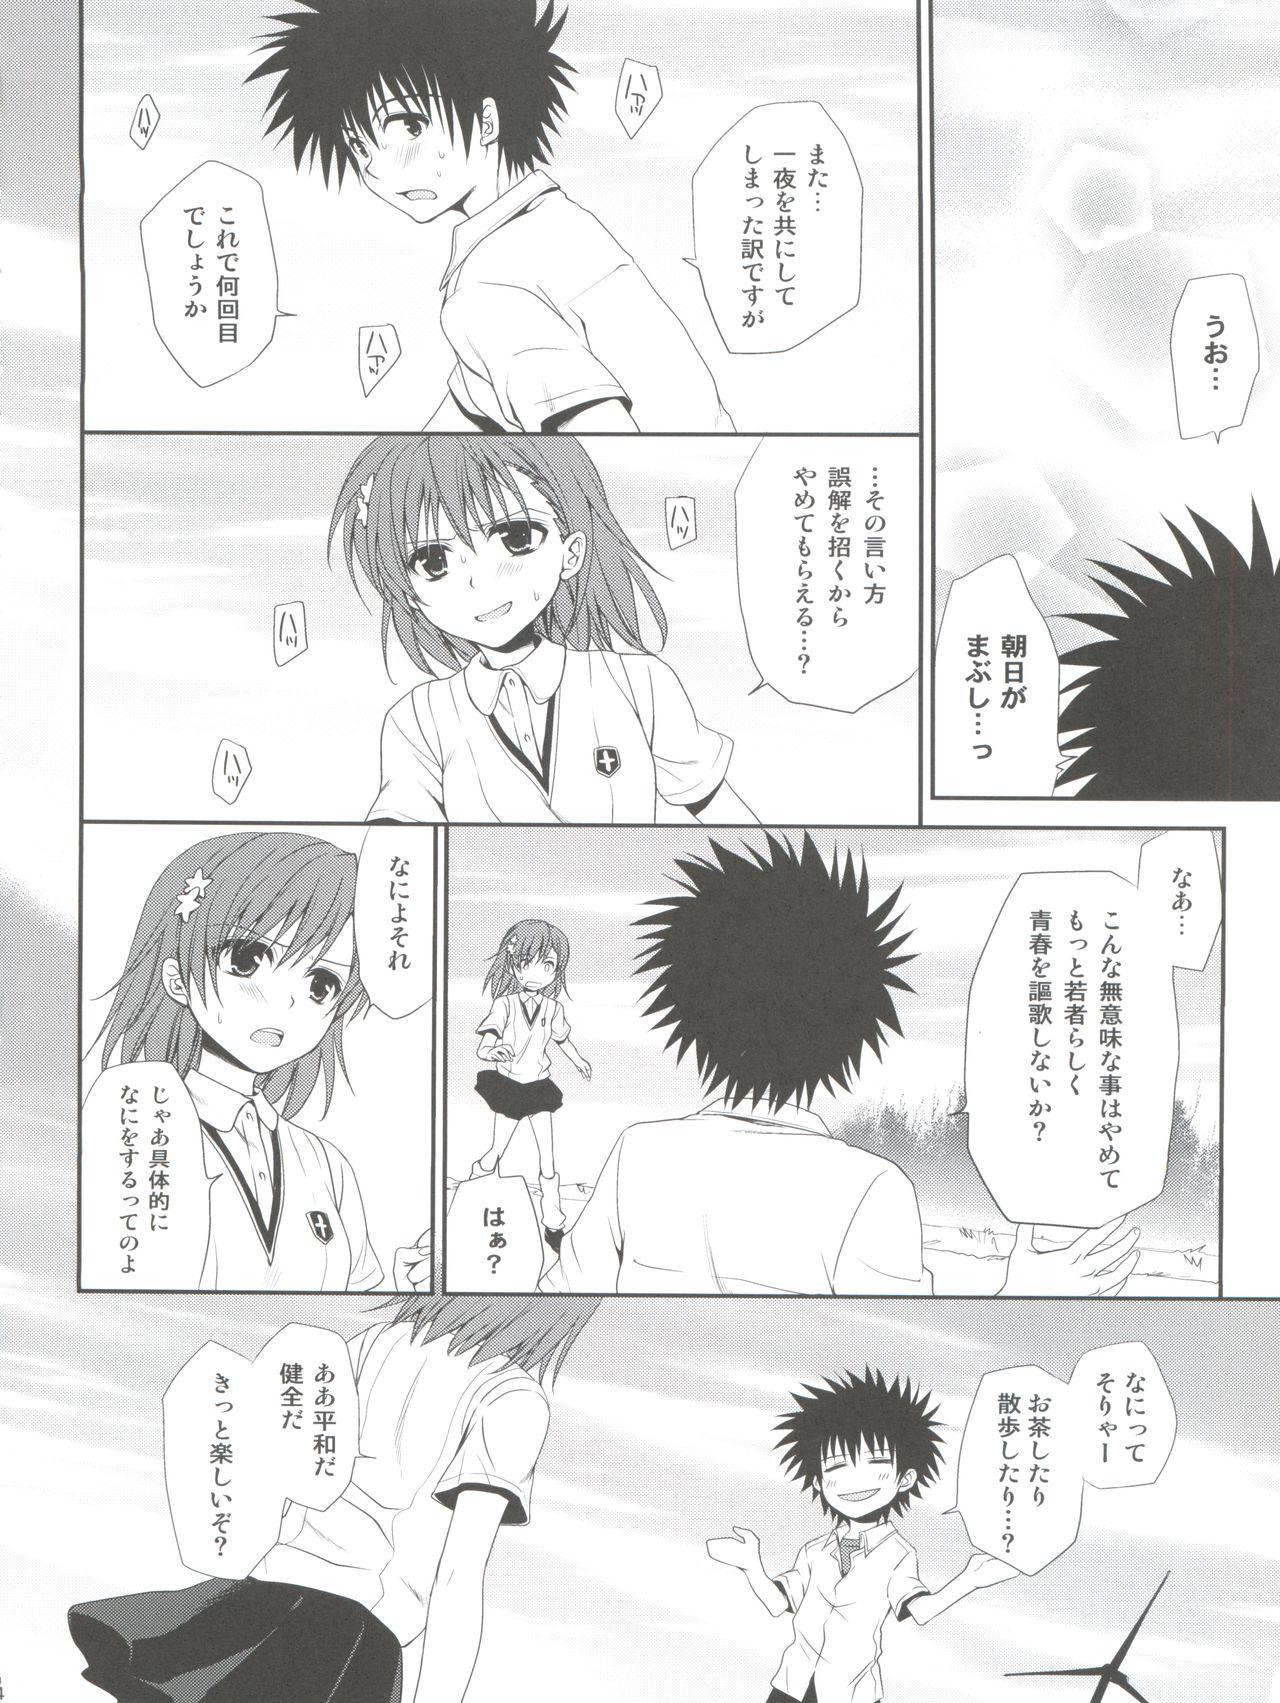 Realsex Choudenji Hou no Sasoikata - Toaru majutsu no index Ninfeta - Page 4